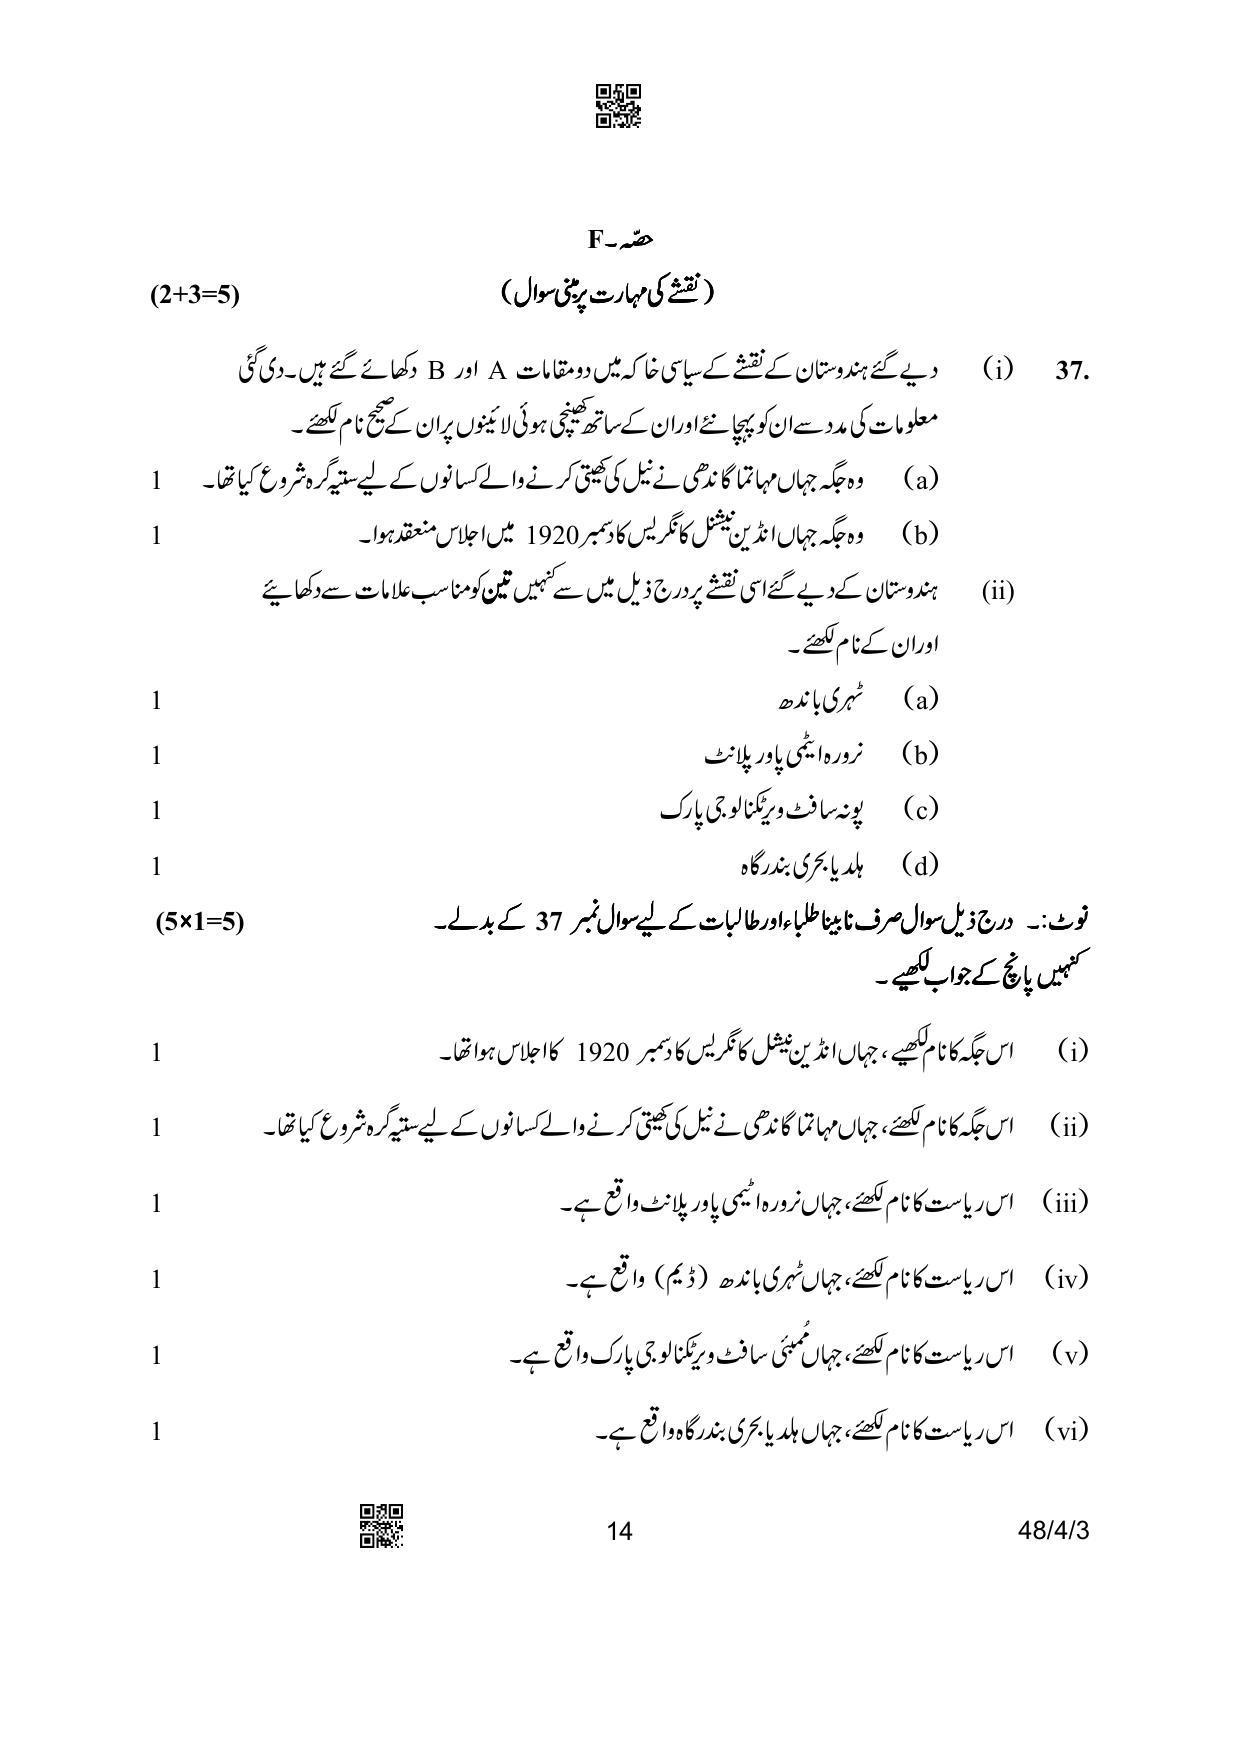 CBSE Class 10 48-4-3 Social Science Urdu Version 2023 Question Paper - Page 14